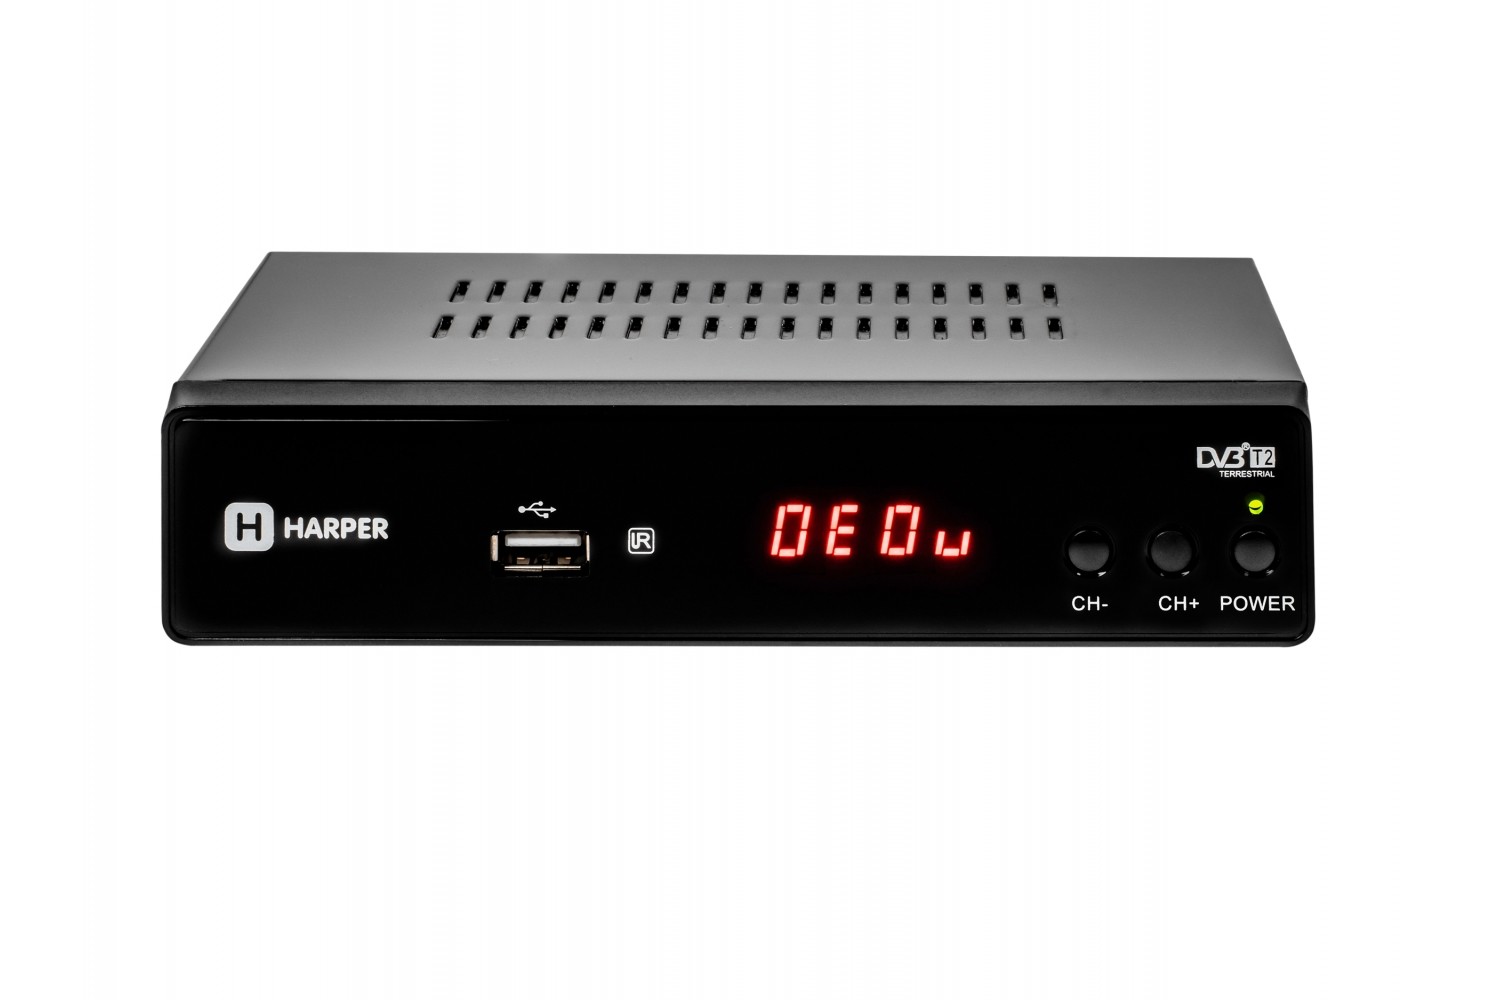  HARPER HDT2-5010 DVB-T2////MStar